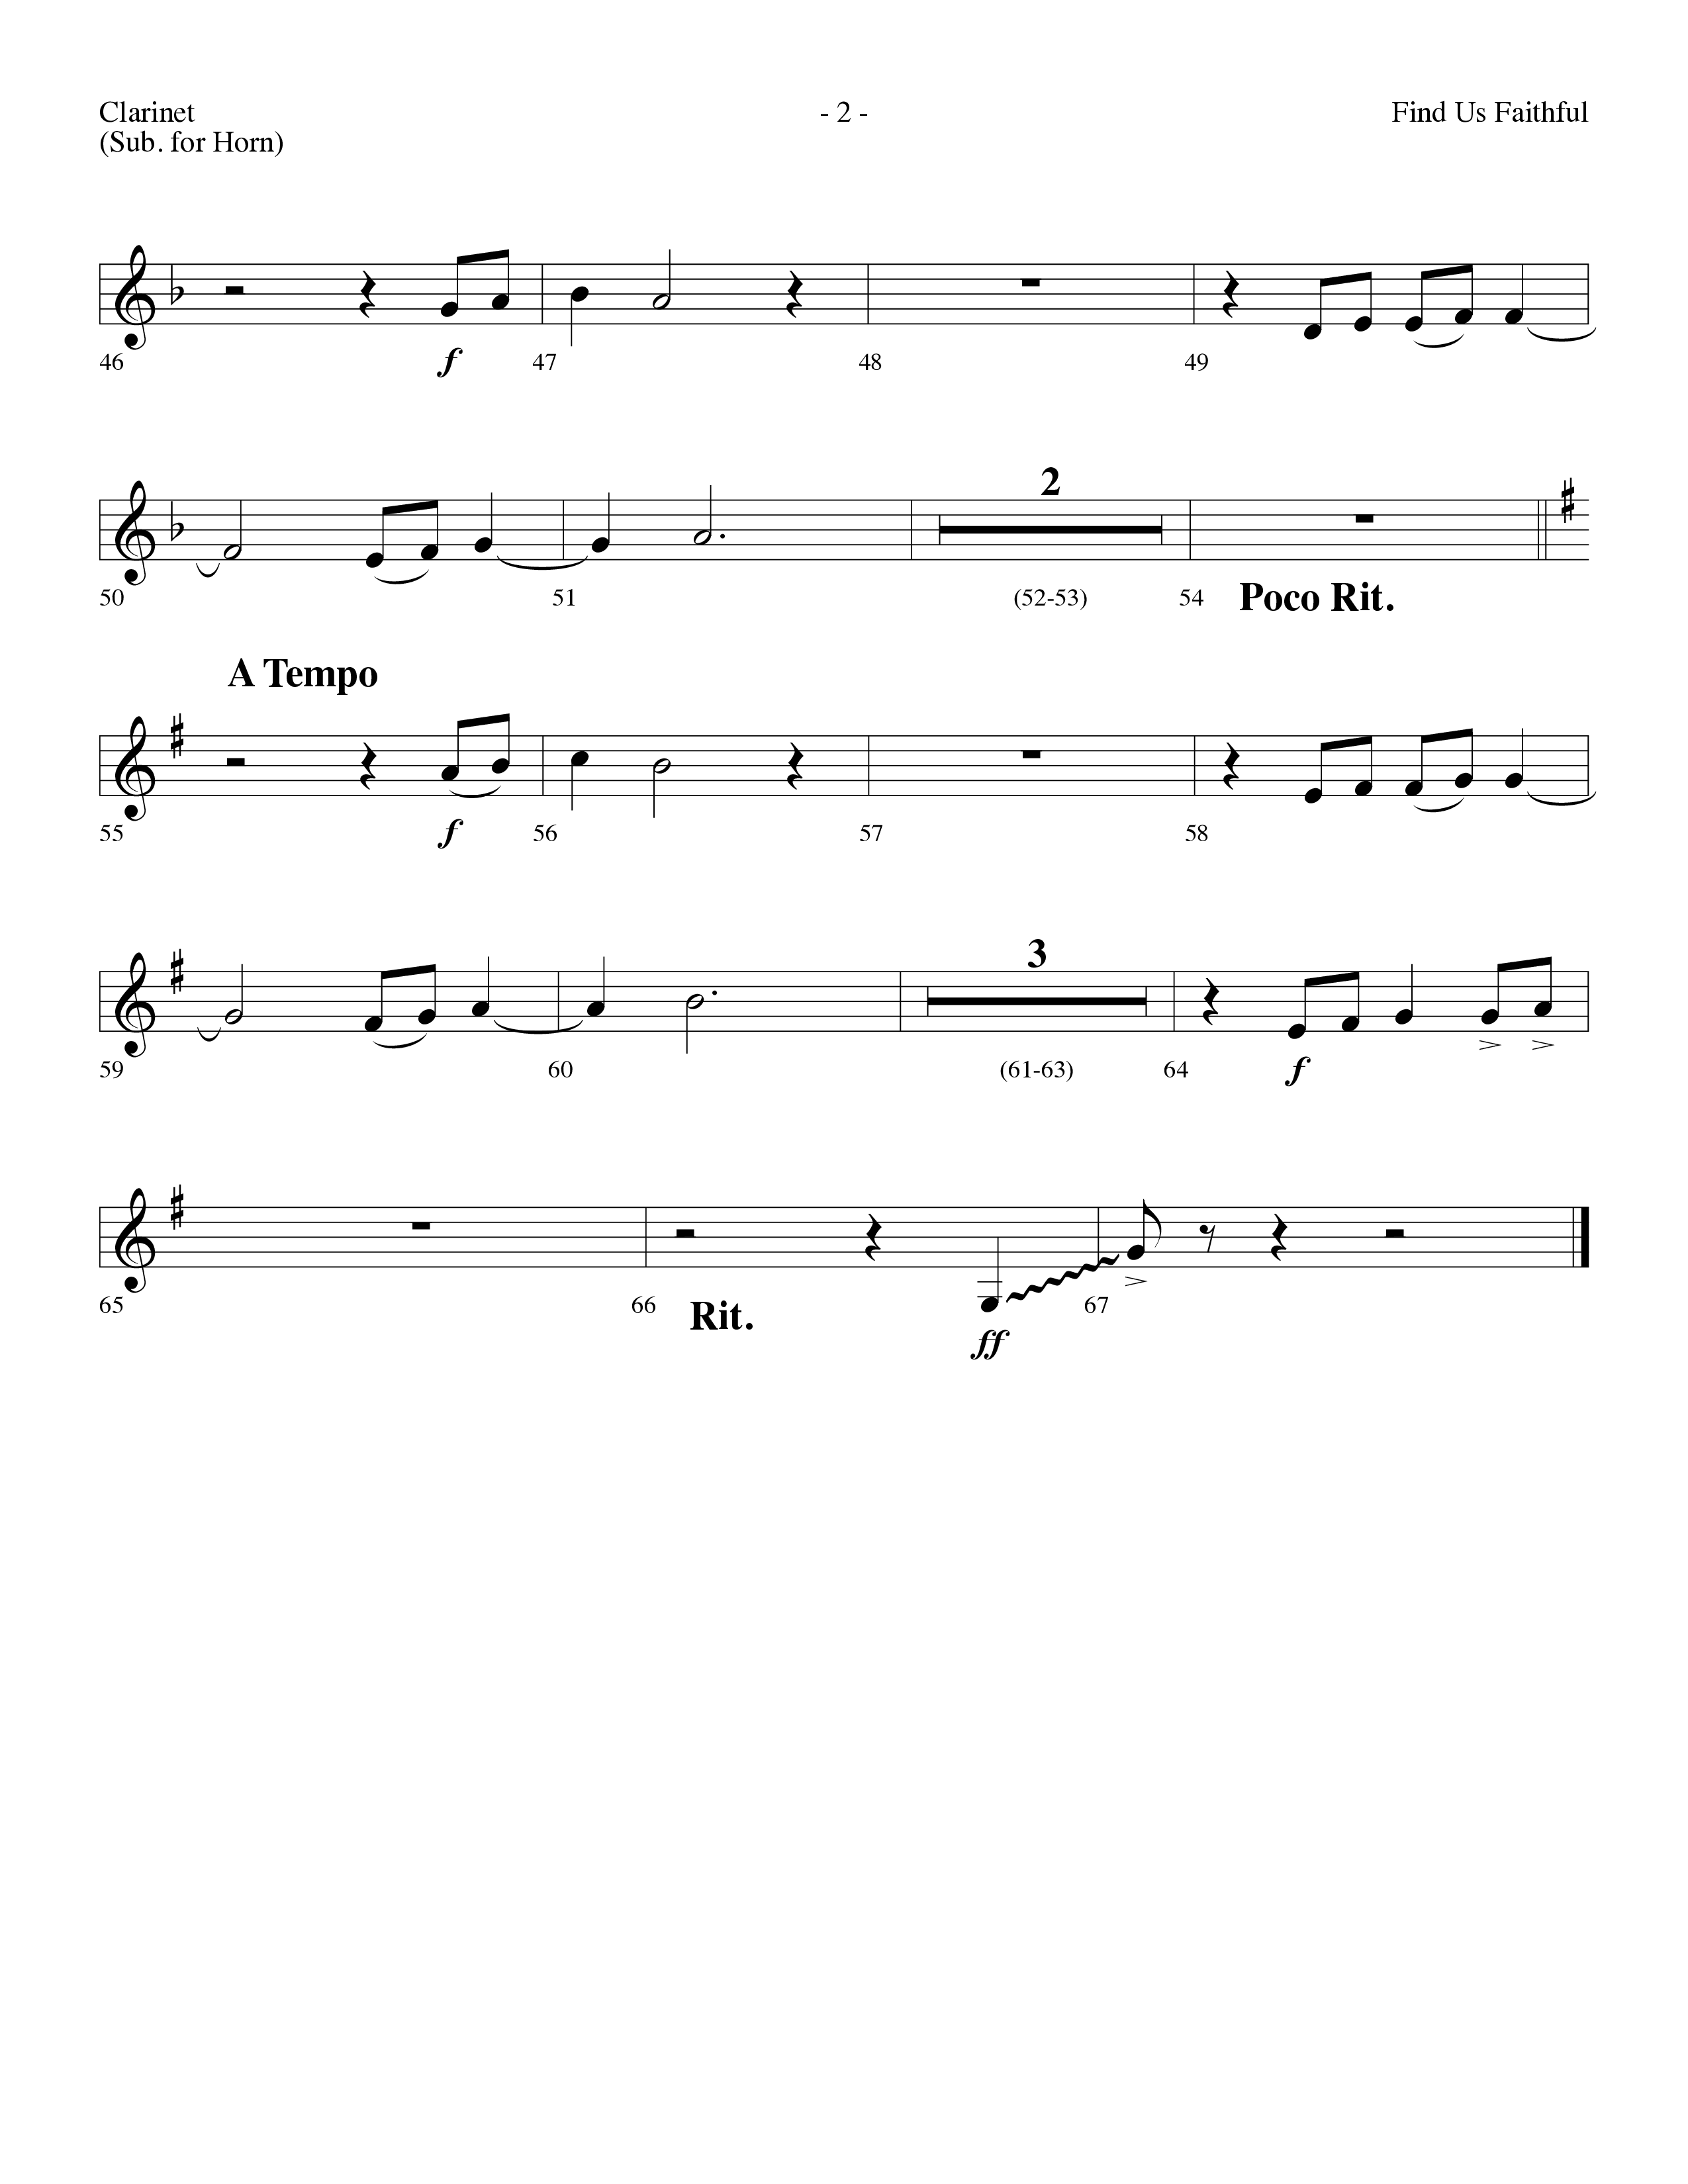 Find Us Faithful (Choral Anthem SATB) Clarinet (Lifeway Choral / Arr. Dennis Allen)